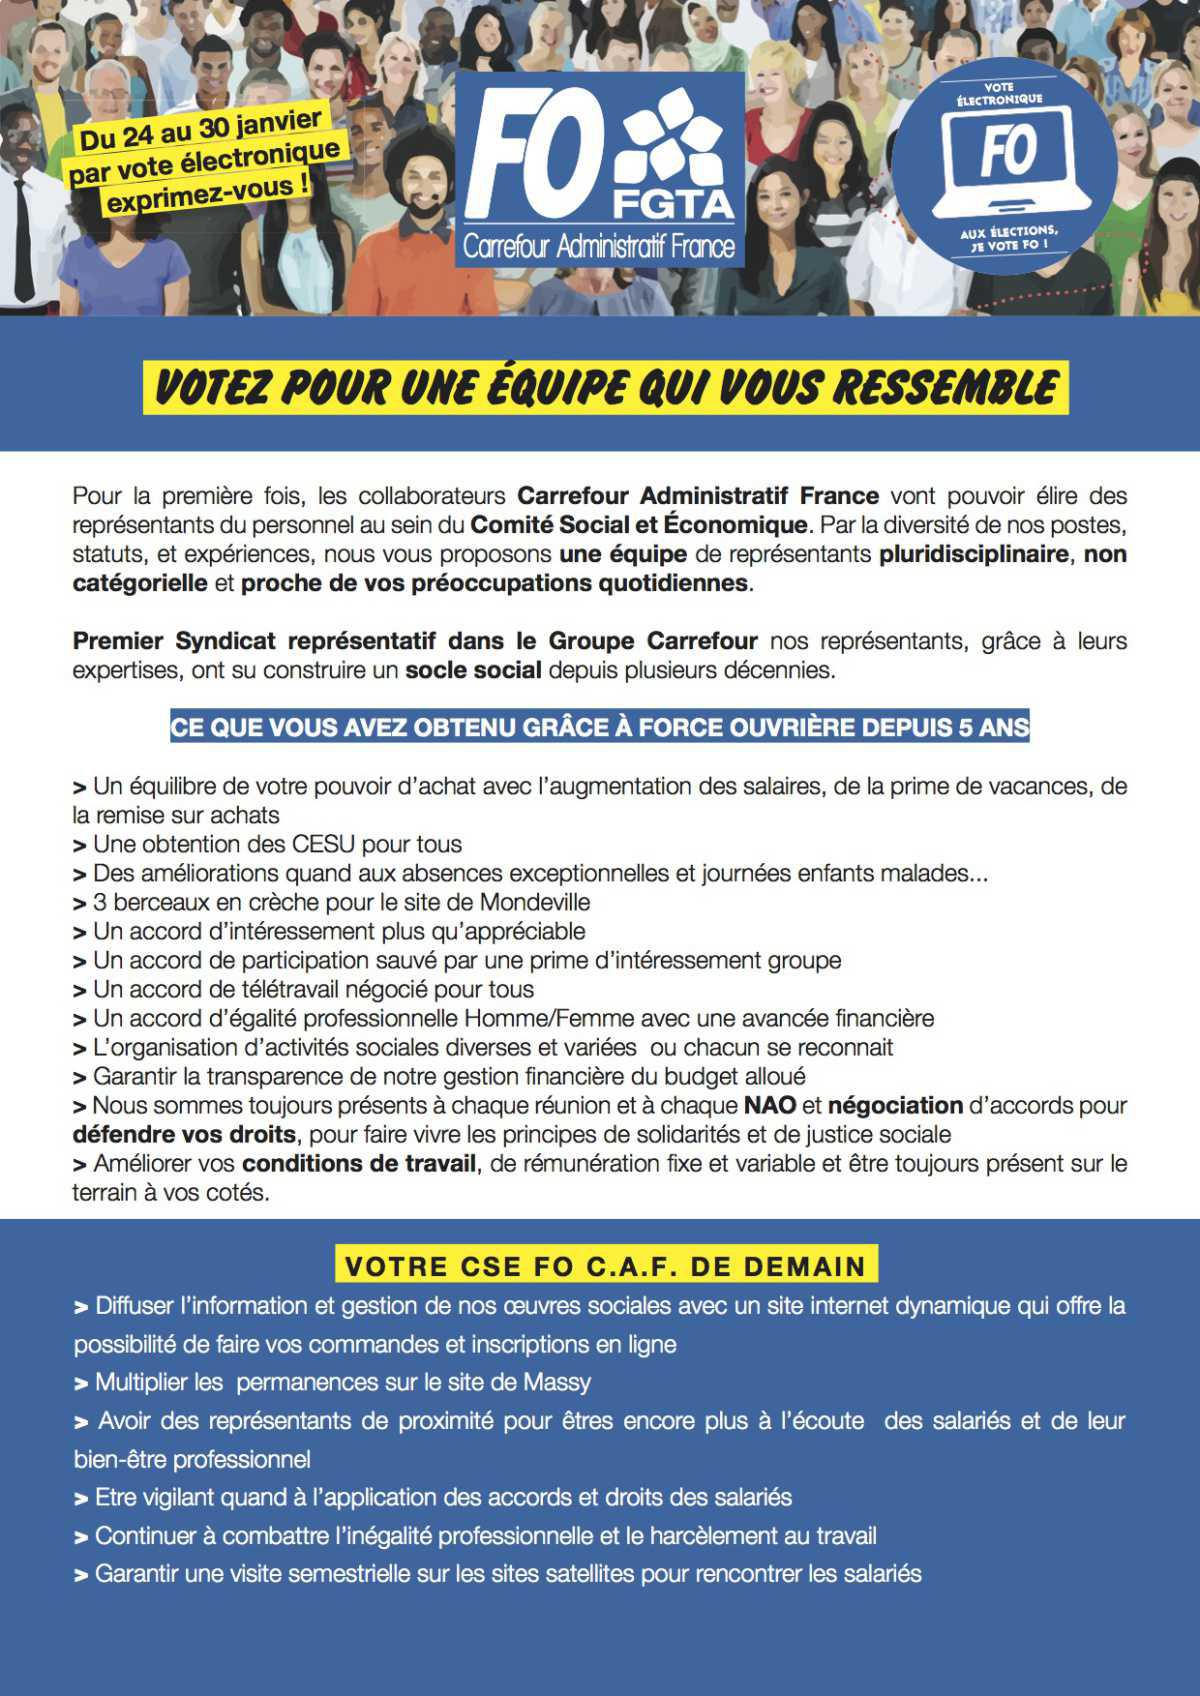 Carrefour Administratif France-Votez pour une équipe qui vous ressemble!